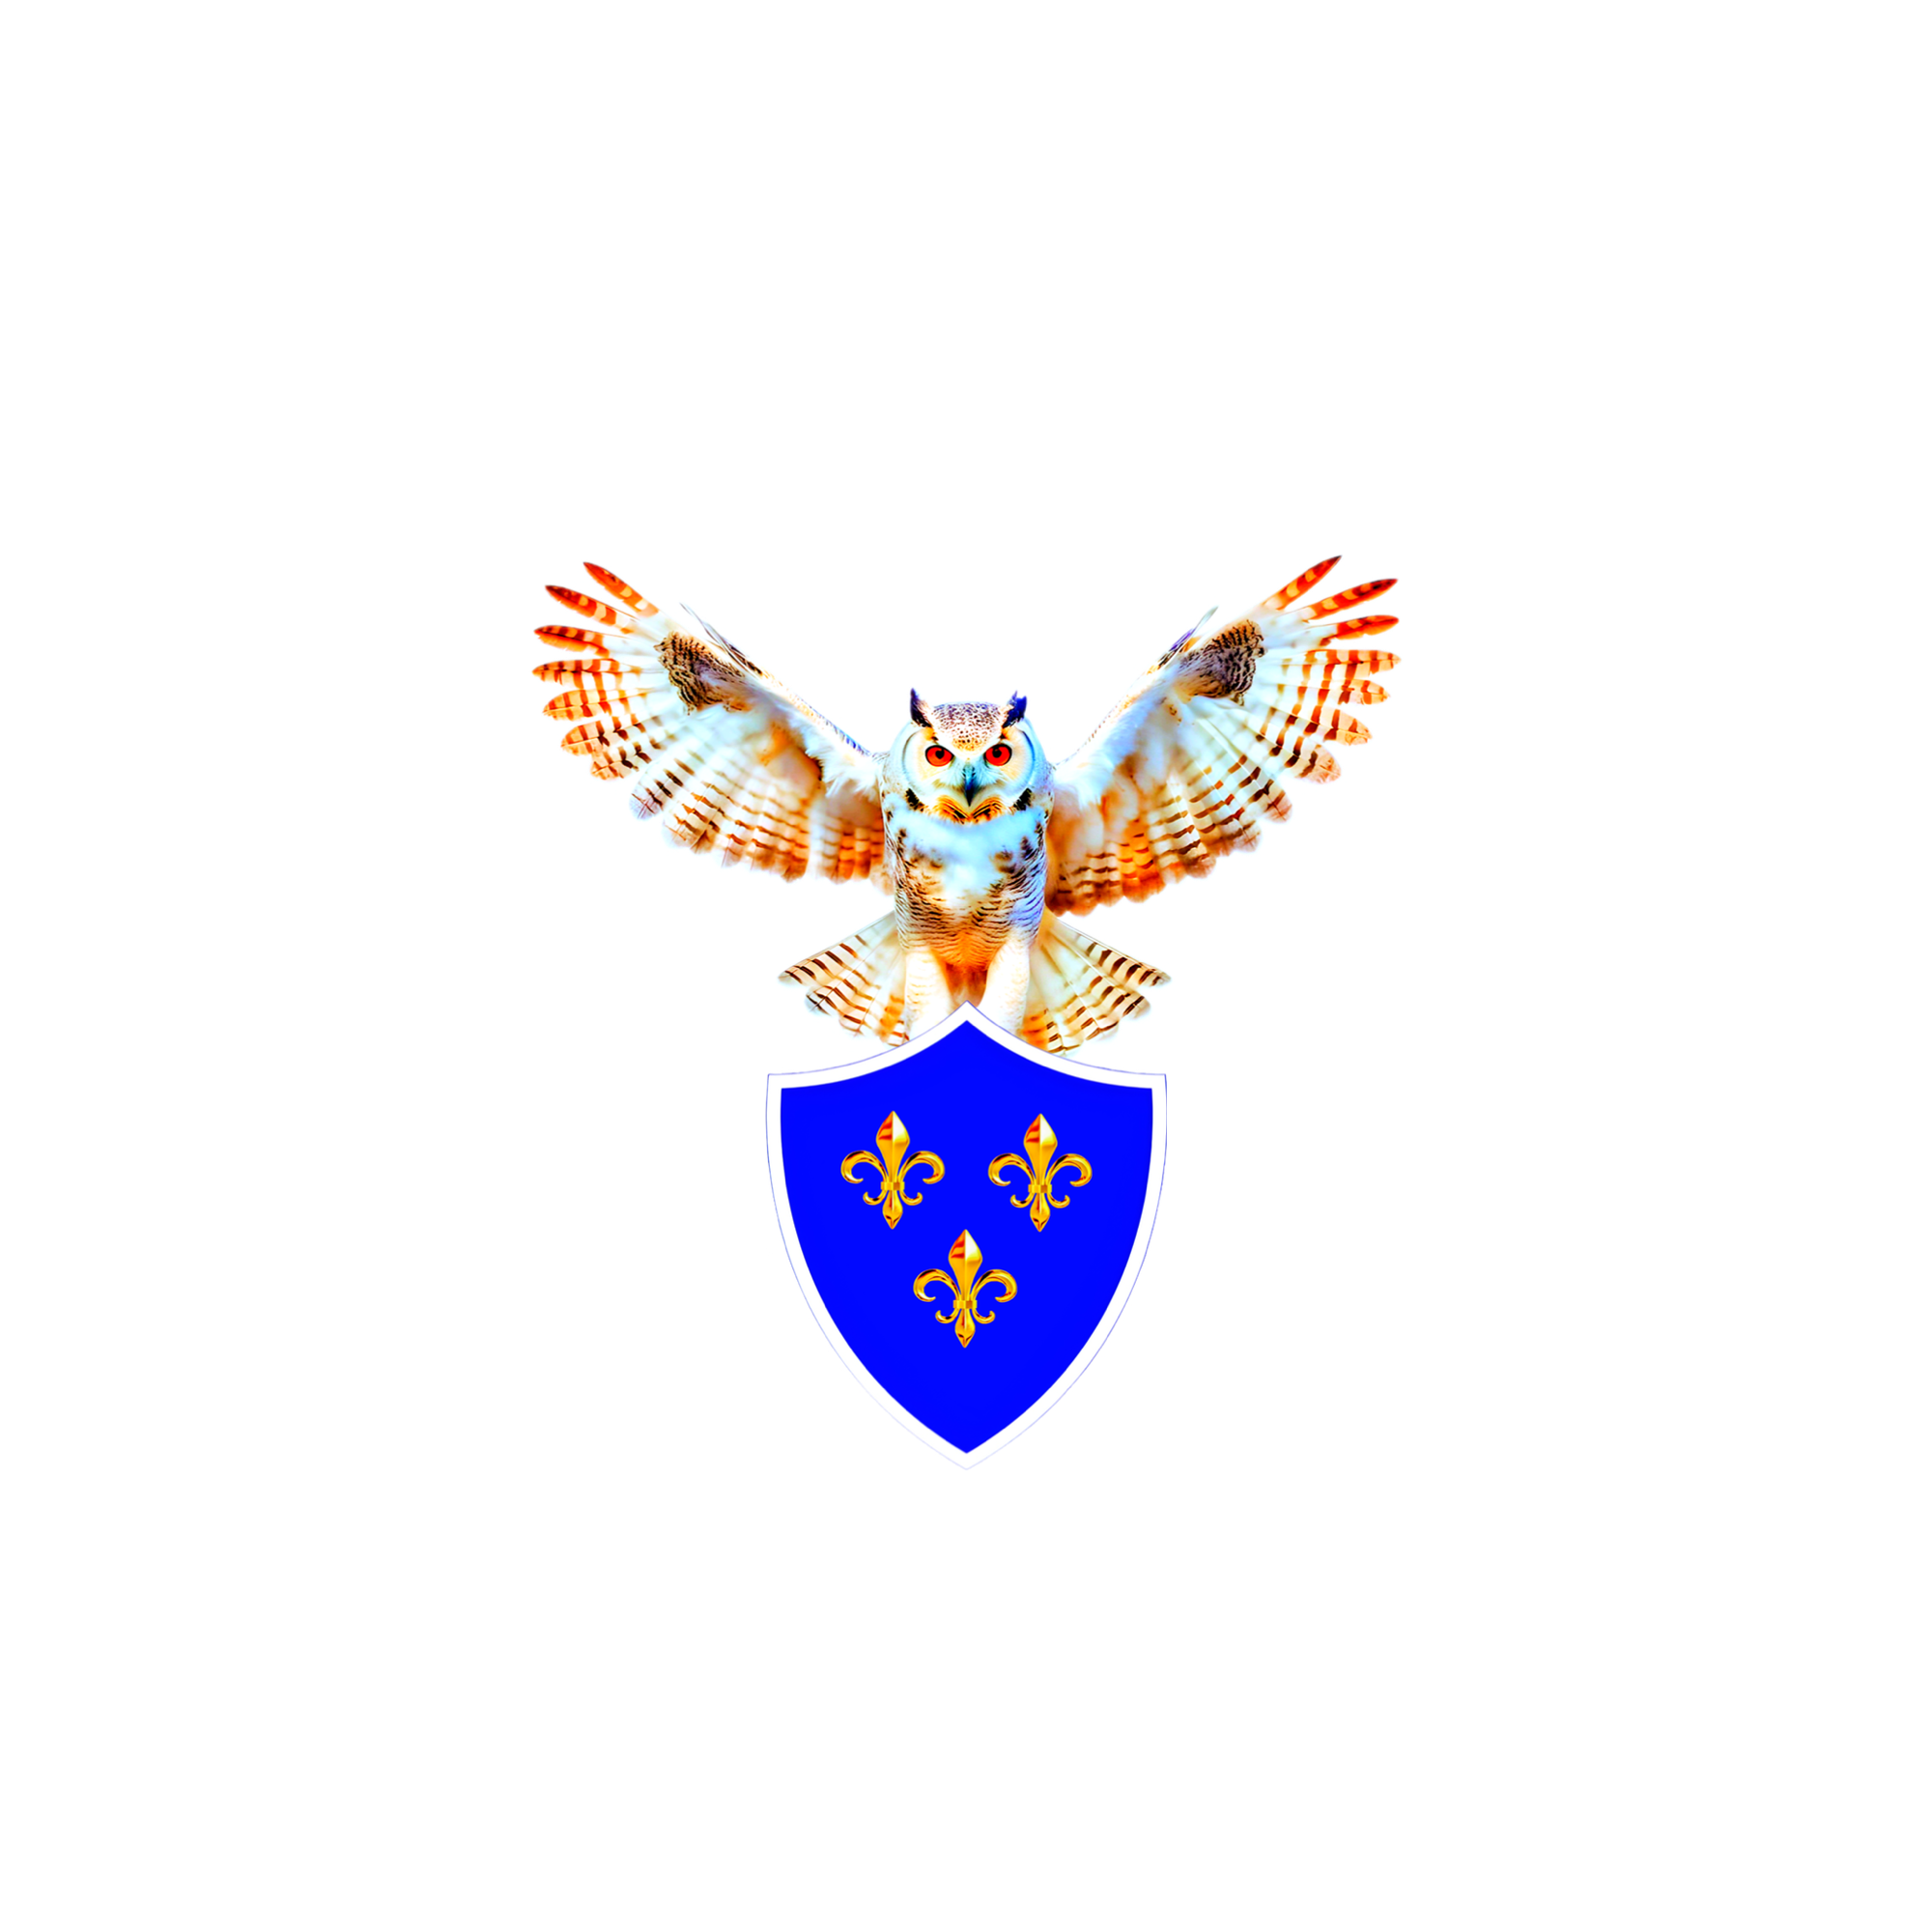 STATUS ODYSSIAS GOUVERNANCES